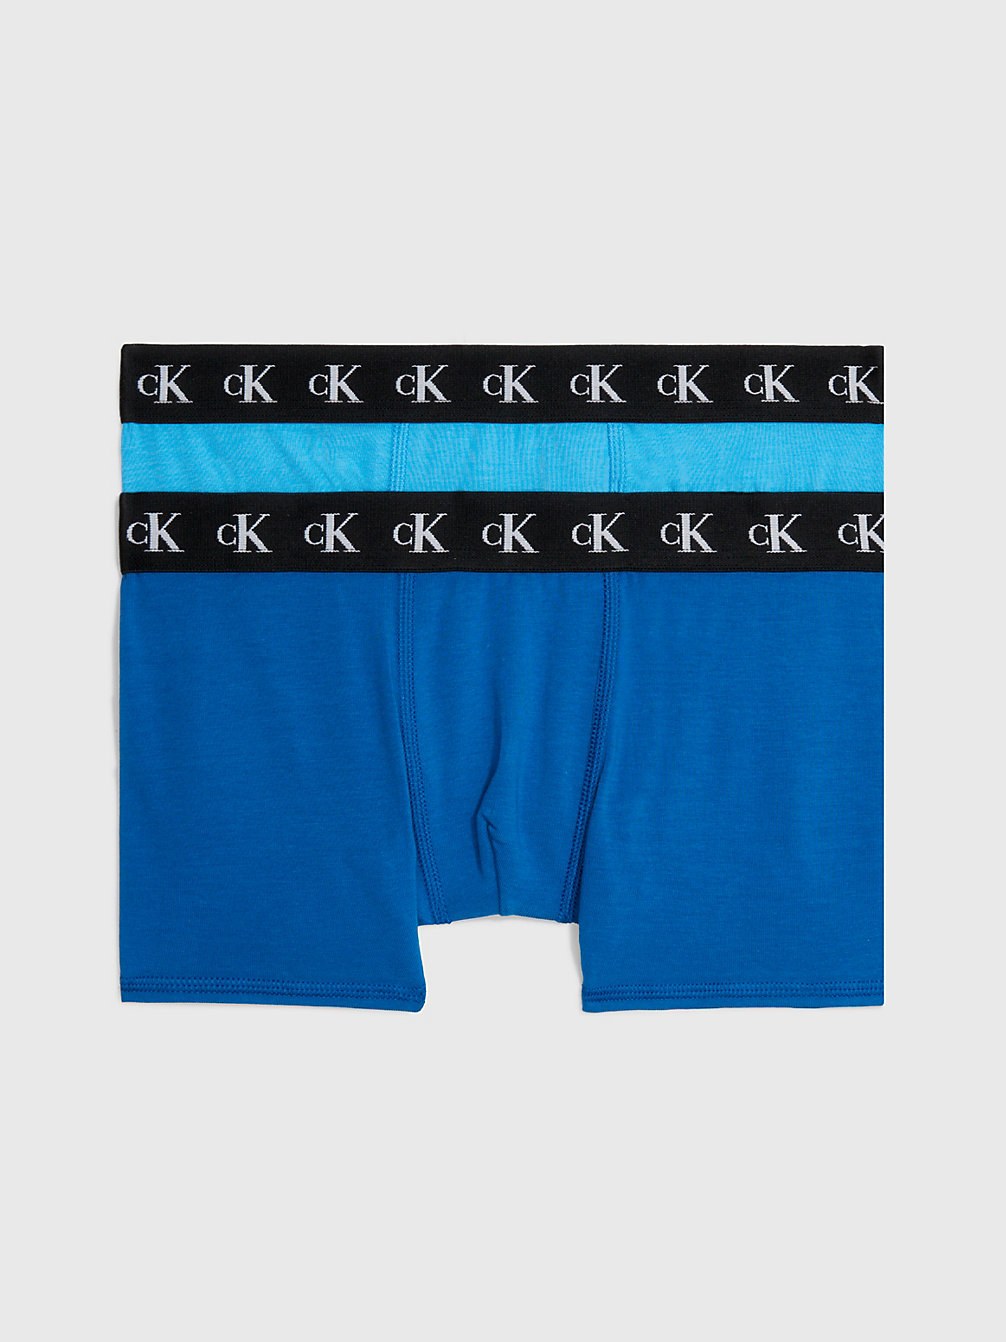 BLUECRUSH/TARPSBLUE 2 Pack Boys Trunks - CK Monogram undefined boys Calvin Klein